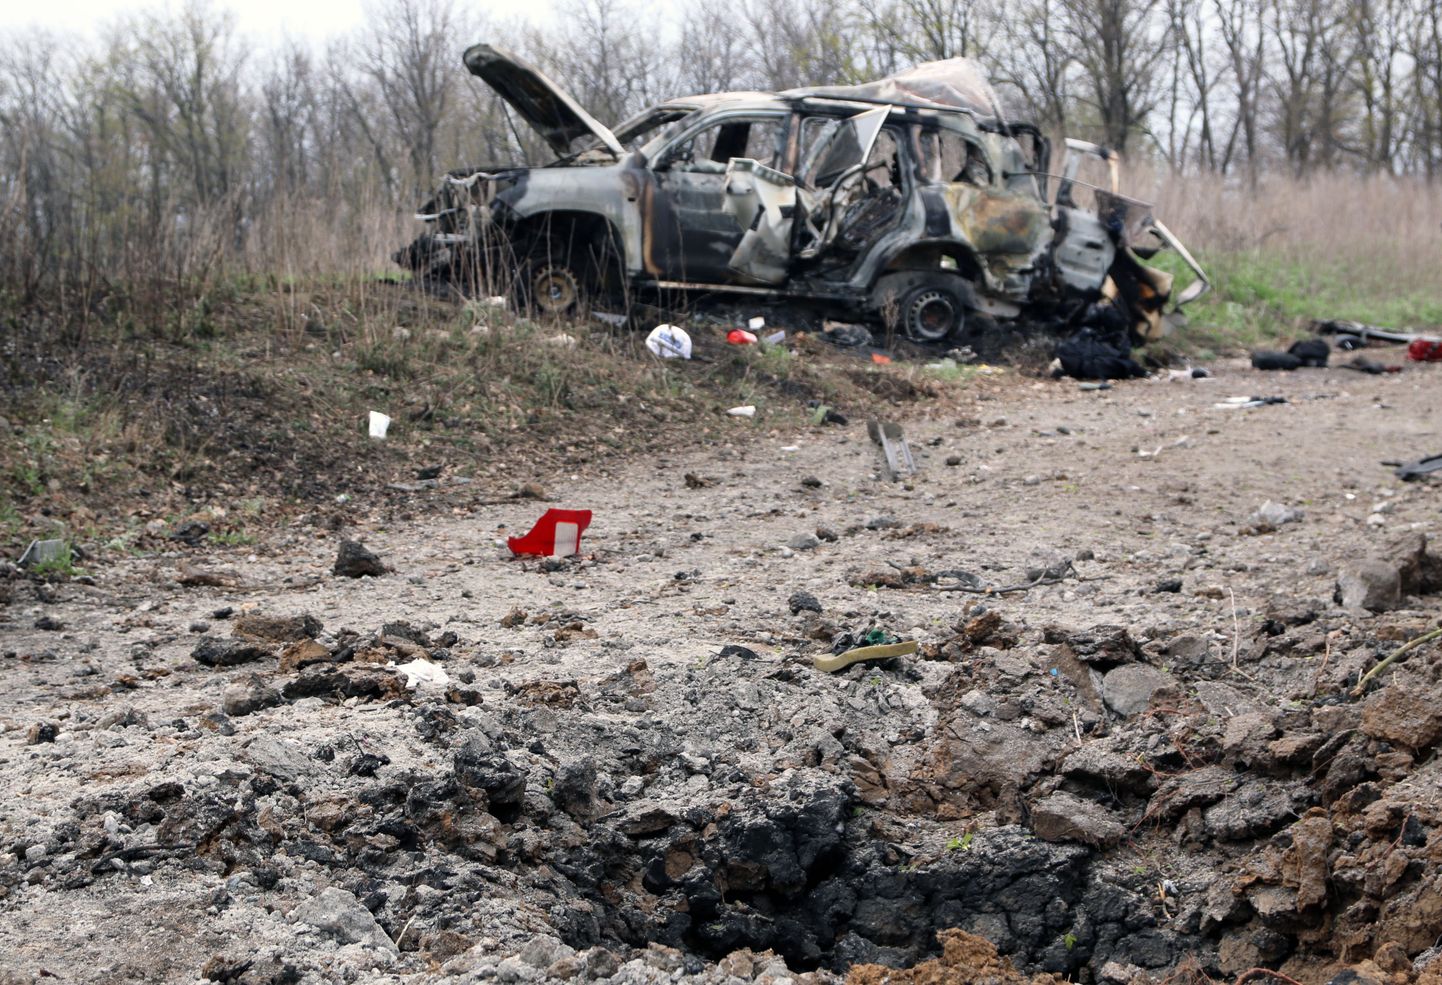 OSCE vaatlusmeeskonna sõiduk pärast miini otsa sõitmist.